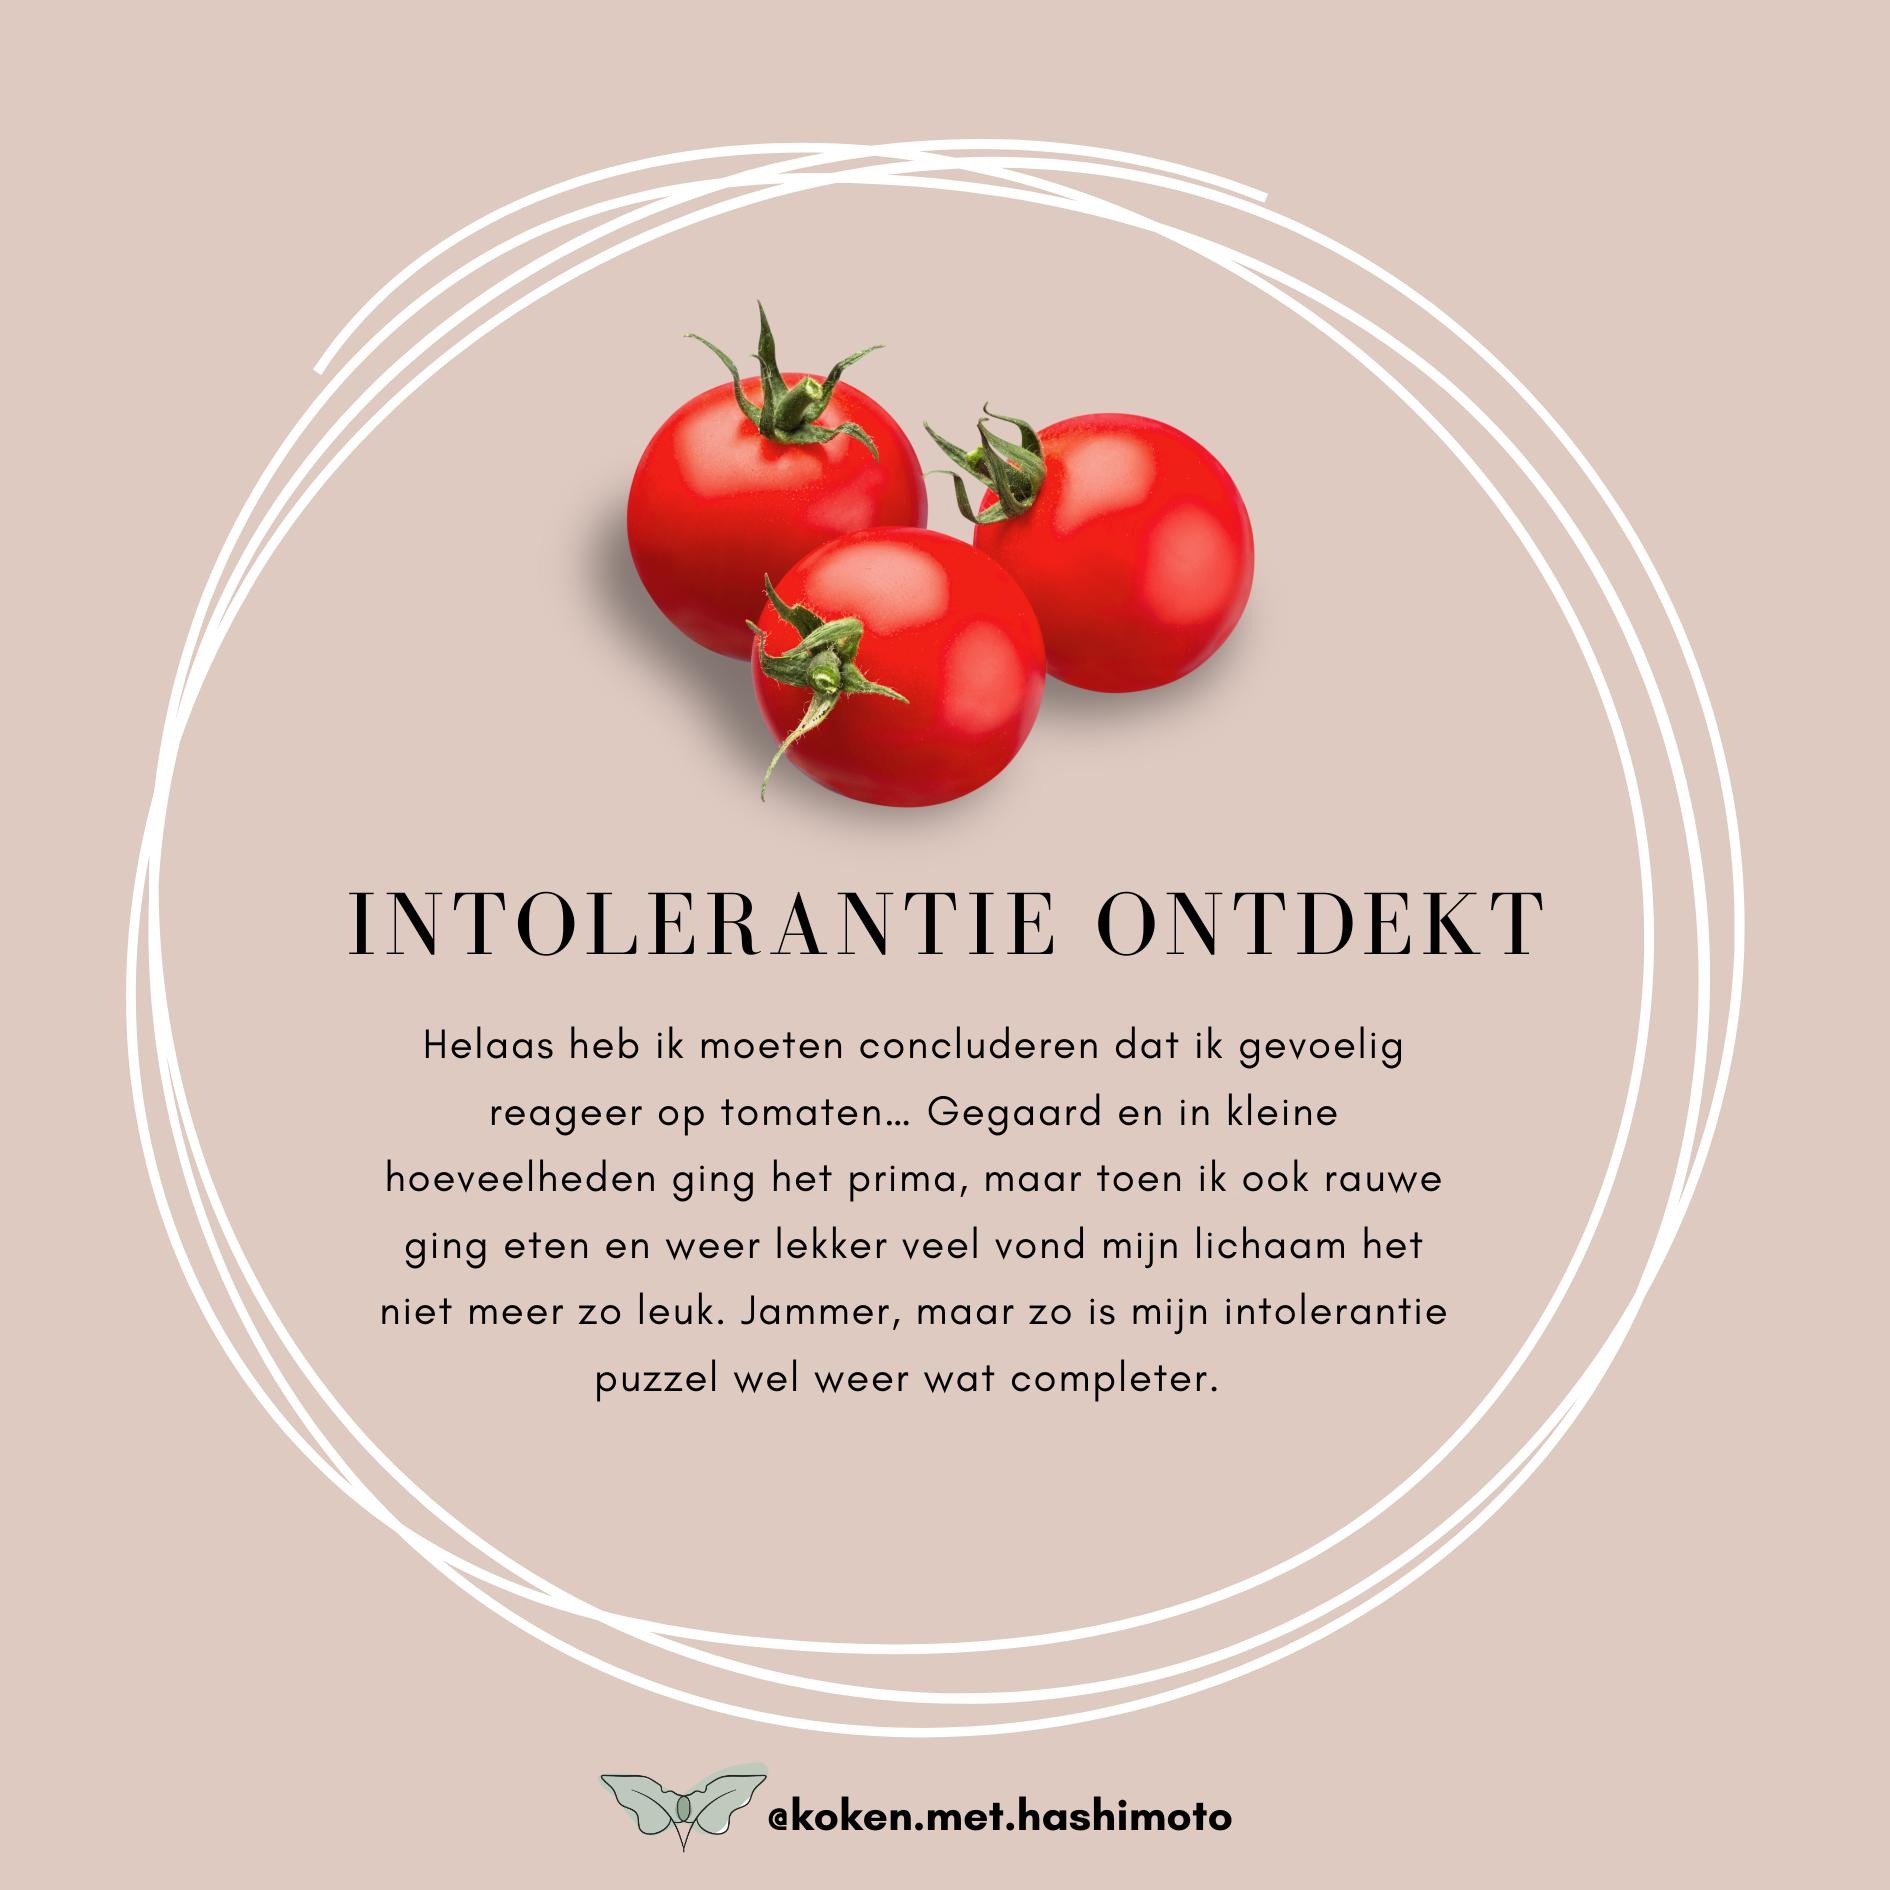 Tomaten intolerantie